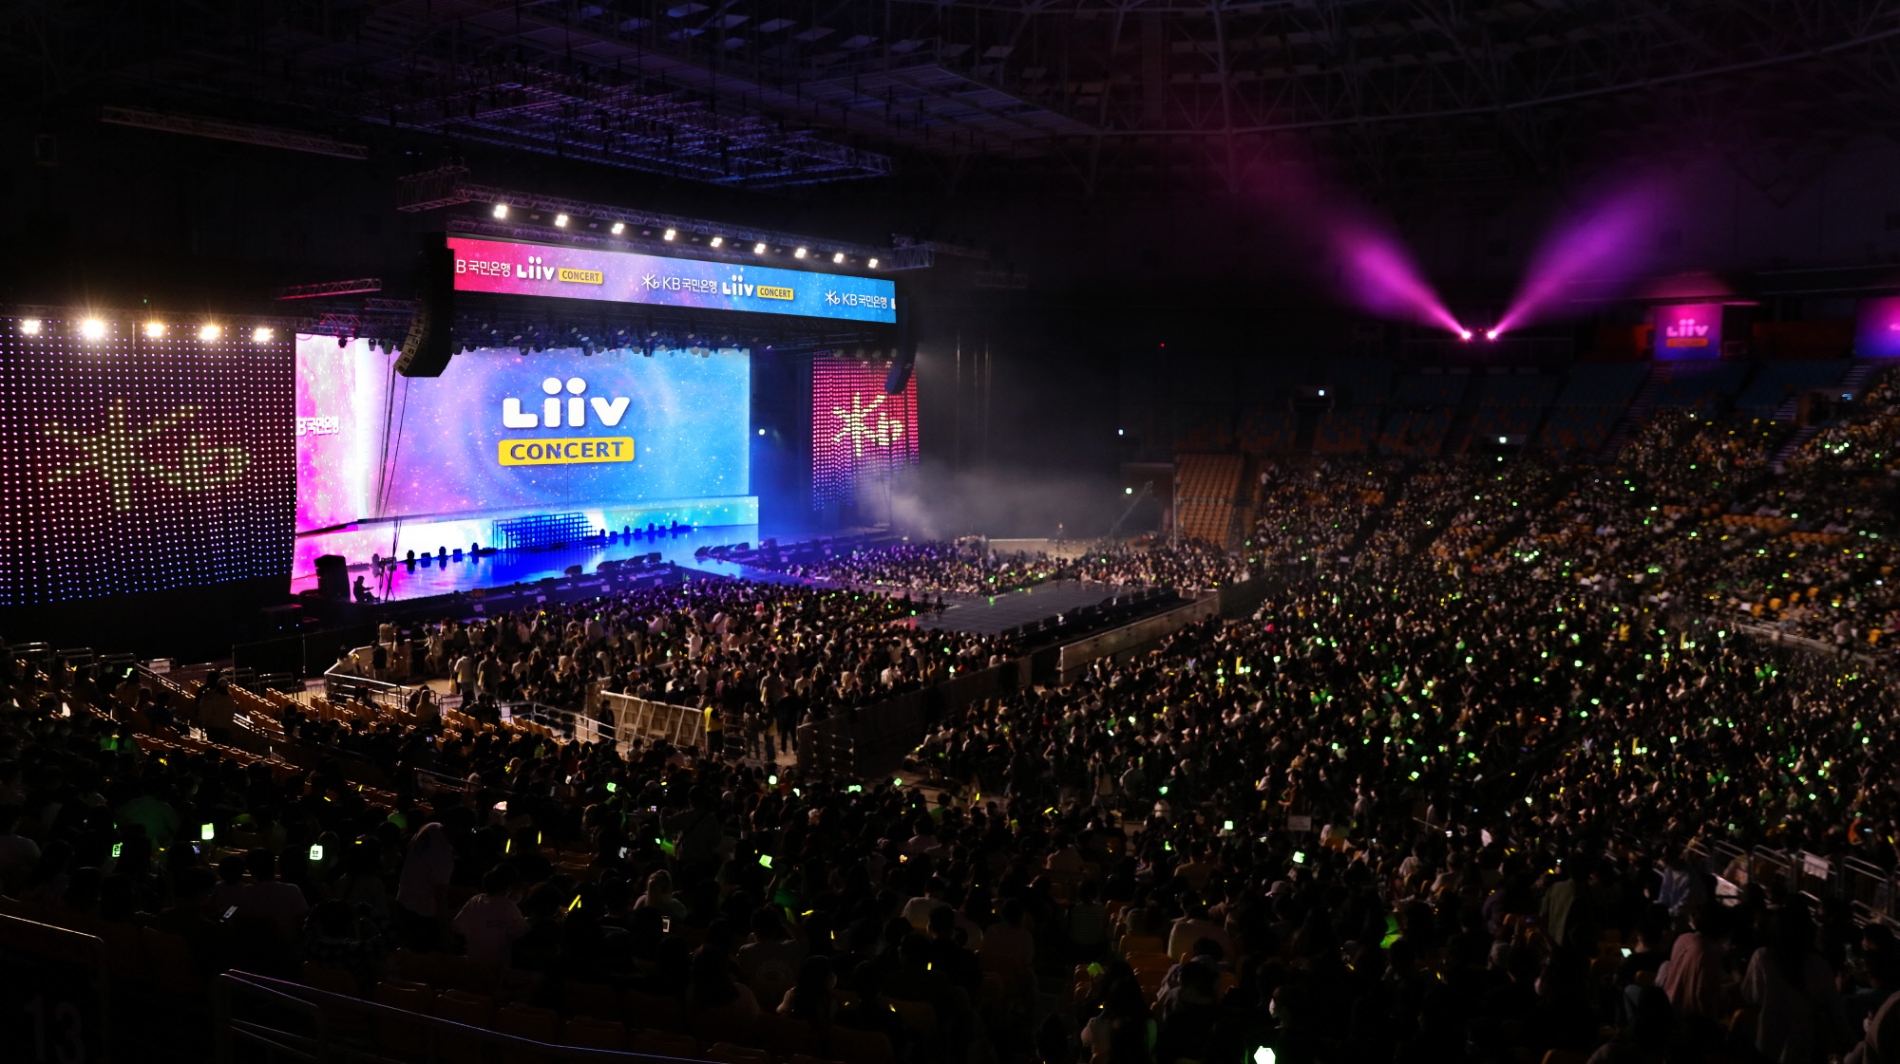 국민은행은 지난 23일 서울 올림픽공원 체조경기장(KSPO DOME)에서 1만여 명의 고객을 초청해 2022 리브 콘서트를 개최했다. / 사진제공=국민은행